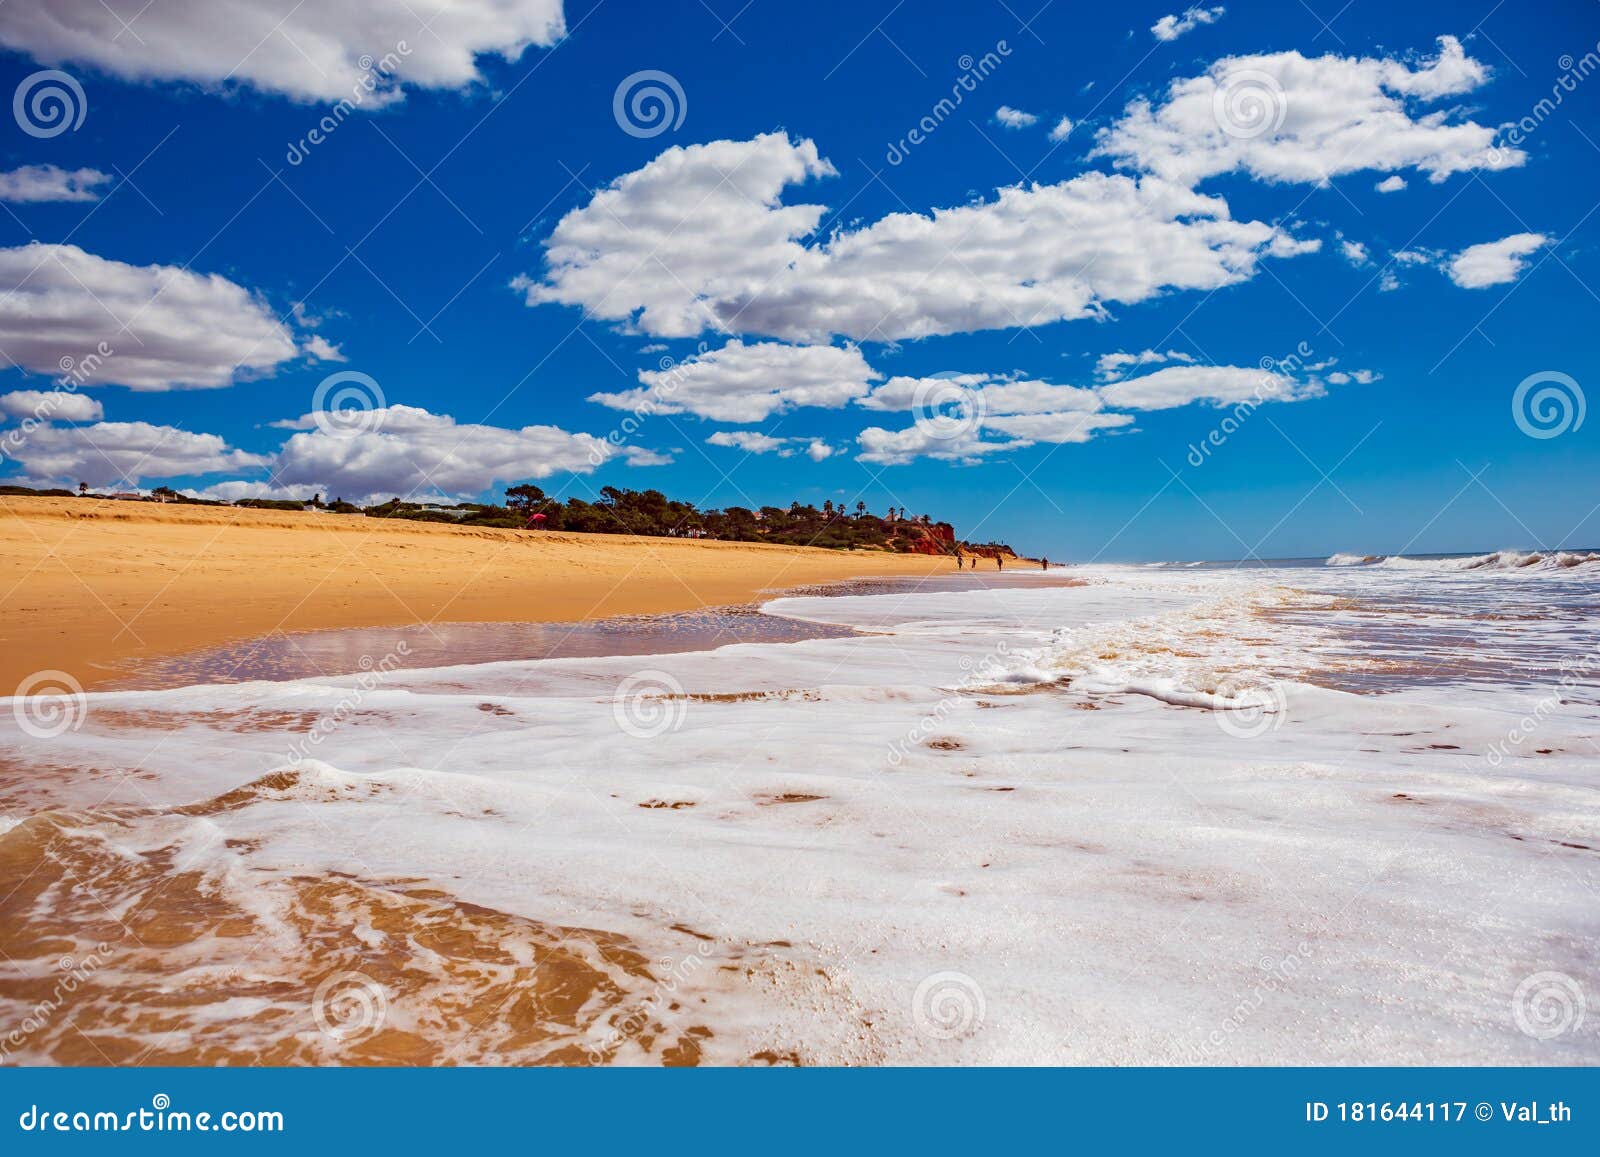 beach of quarteira